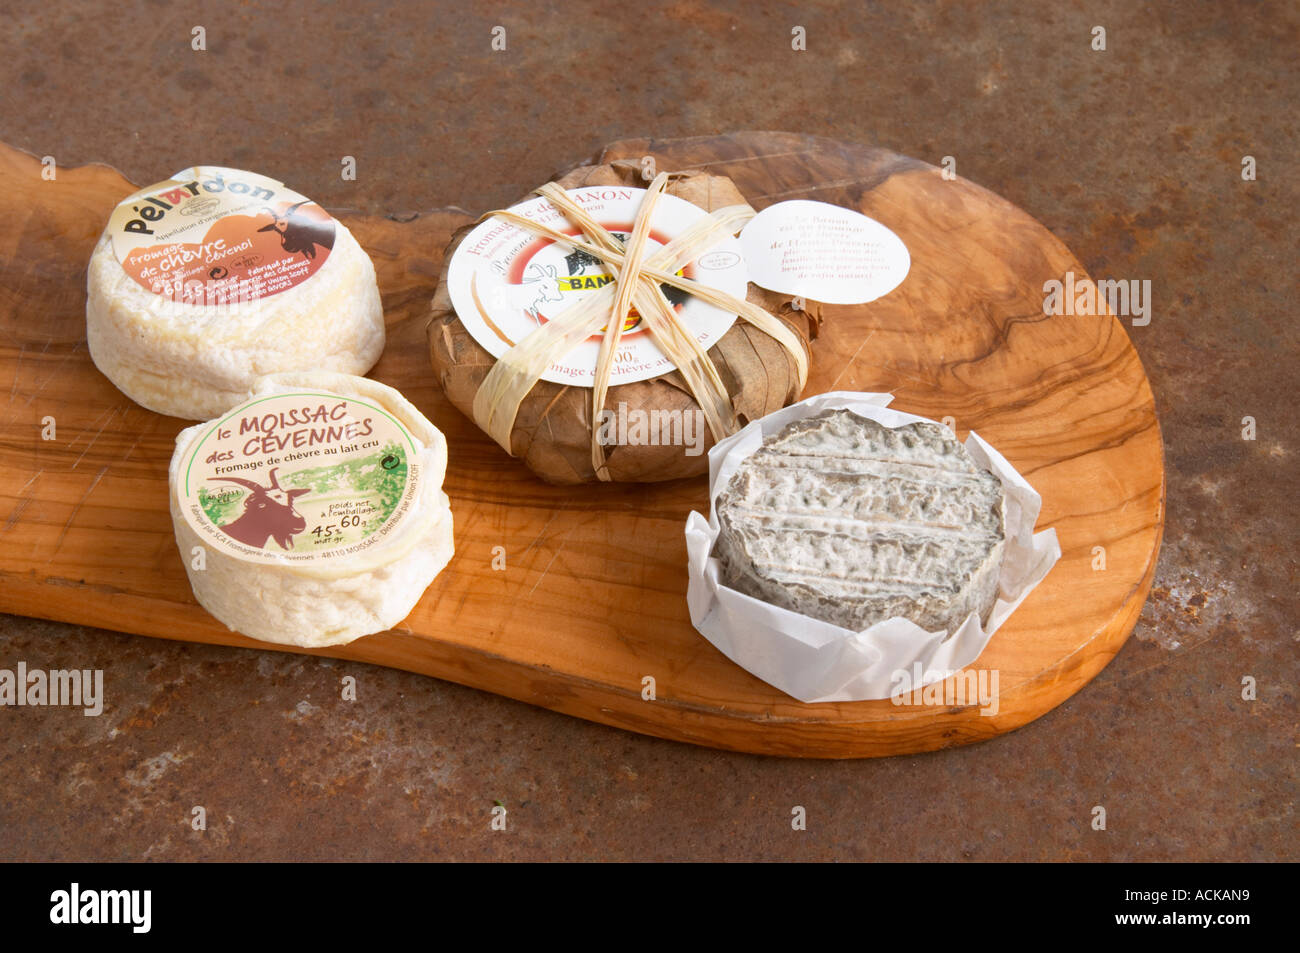 Sélection de fromage de chèvre - chevre - sur une planche à découper en  bois : ash (noir gris-ish), Moissac des Cévennes (avant gauche), Pelardon  (arrière gauche) et Banon (enveloppée dans les